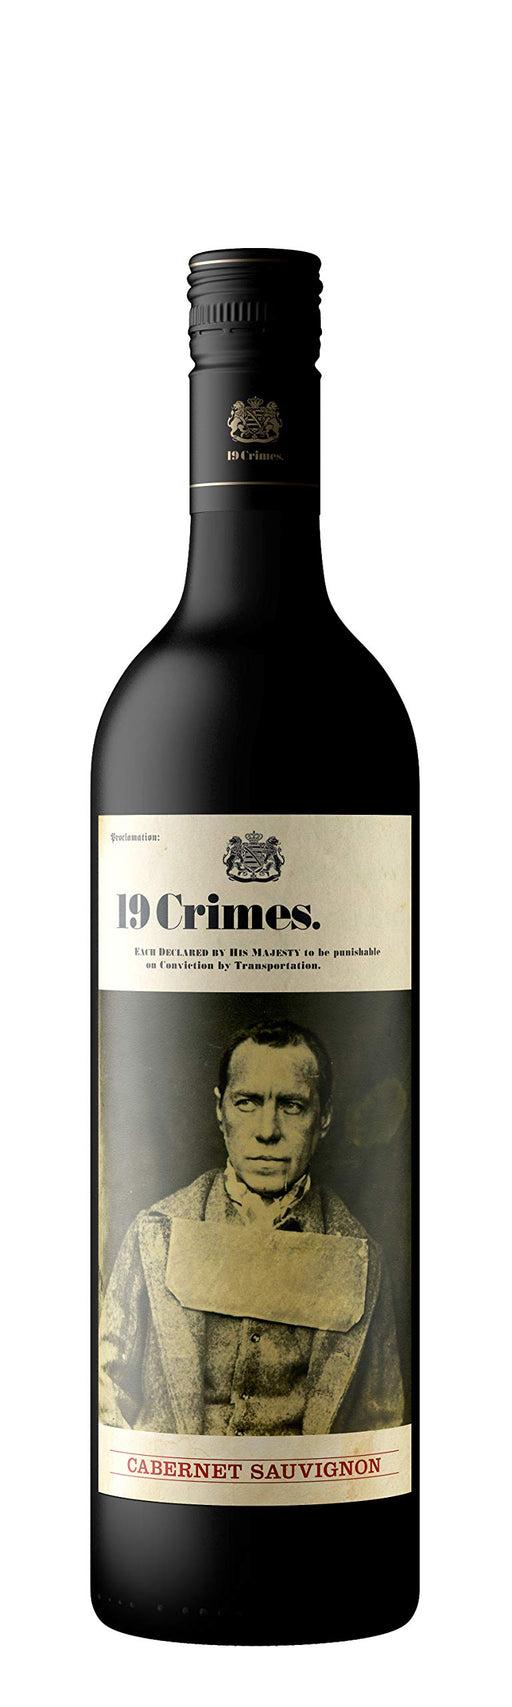 19 Crimes Cabernet Sauvignon Wine 750 ml (Case of 6)  Visit the 19 Crimes Store